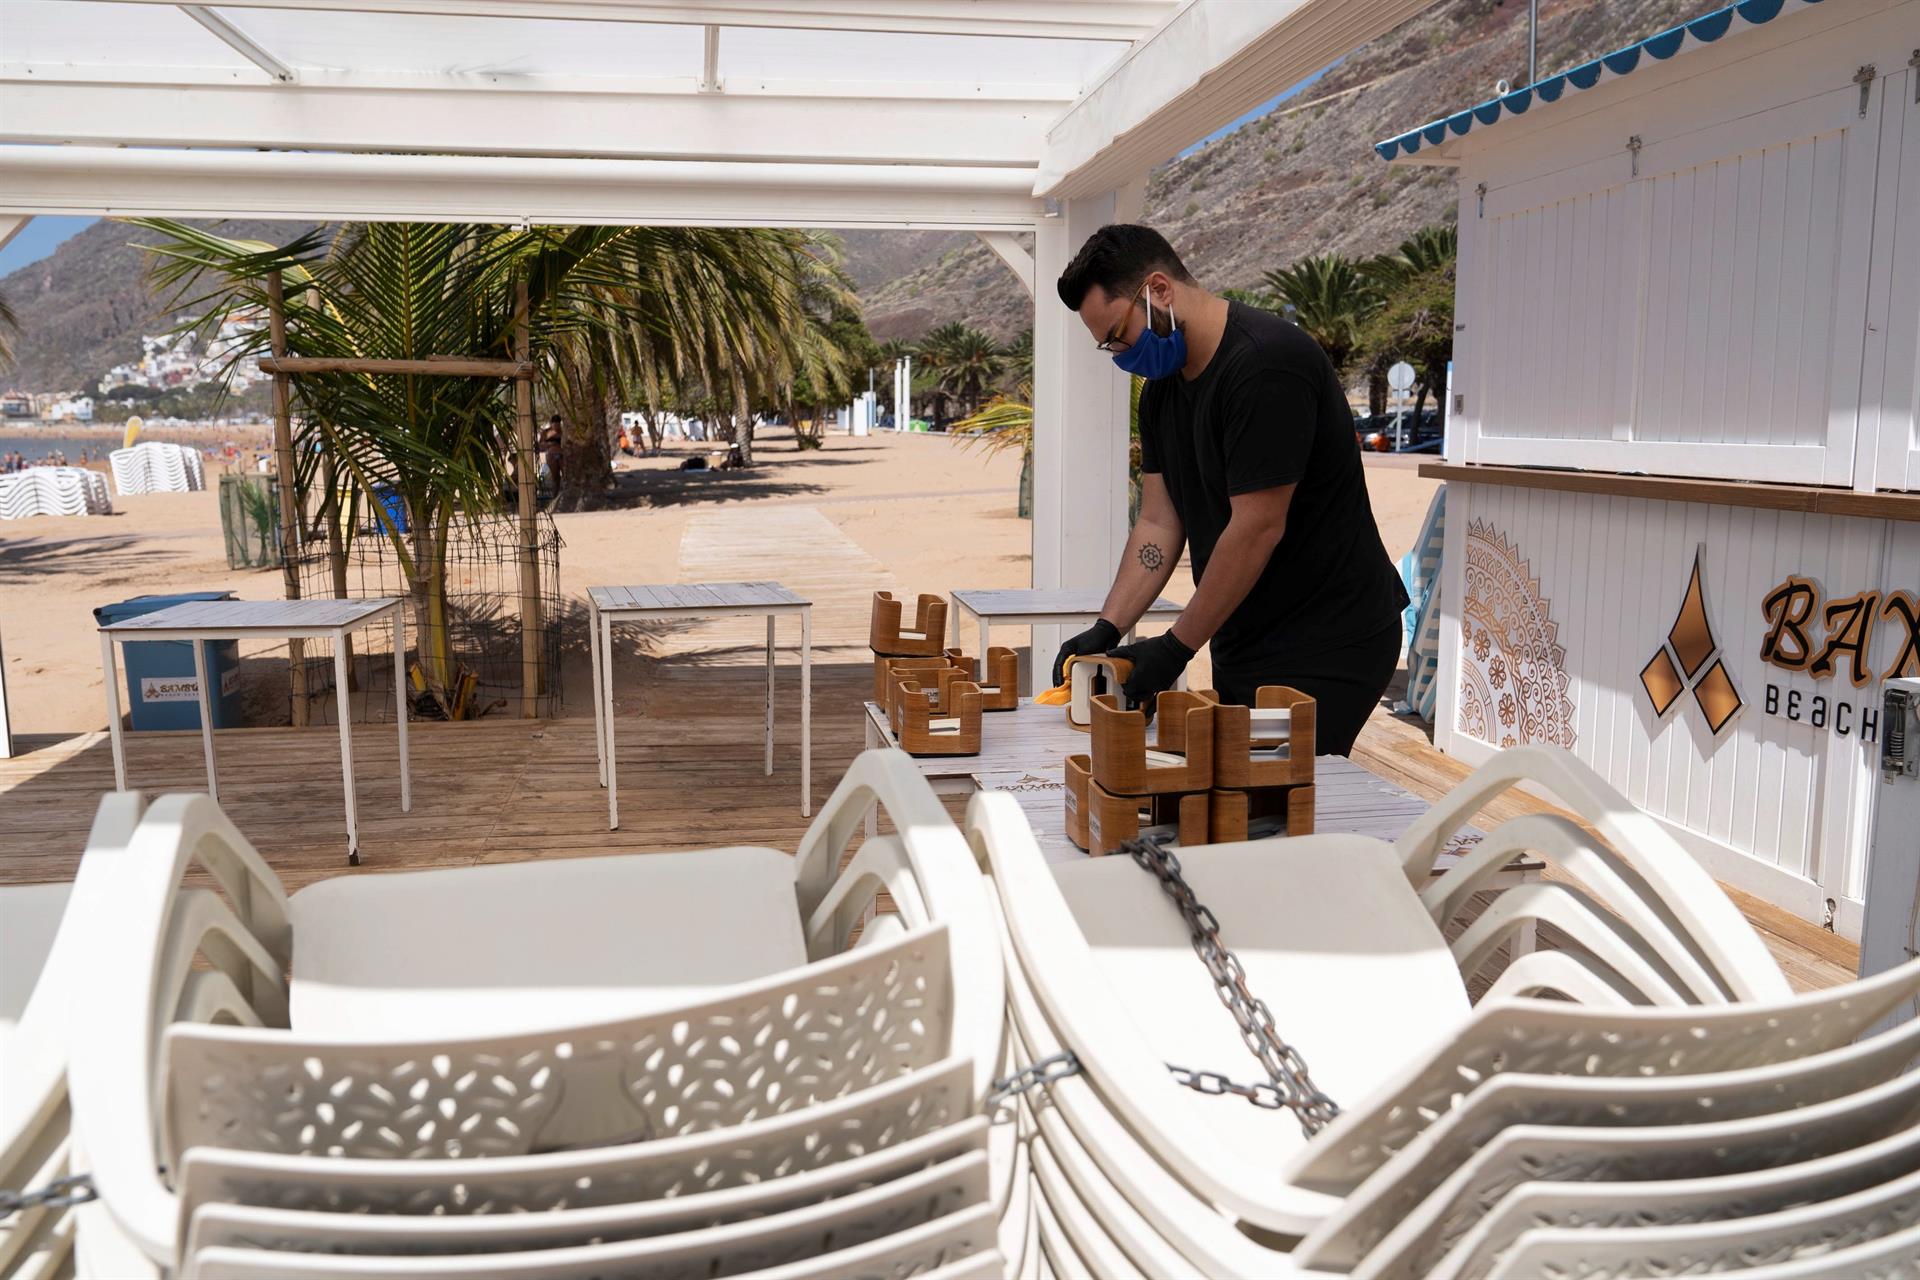 Funcionário arruma cadeiras de praia nas Ilhas Baleares, Espanha